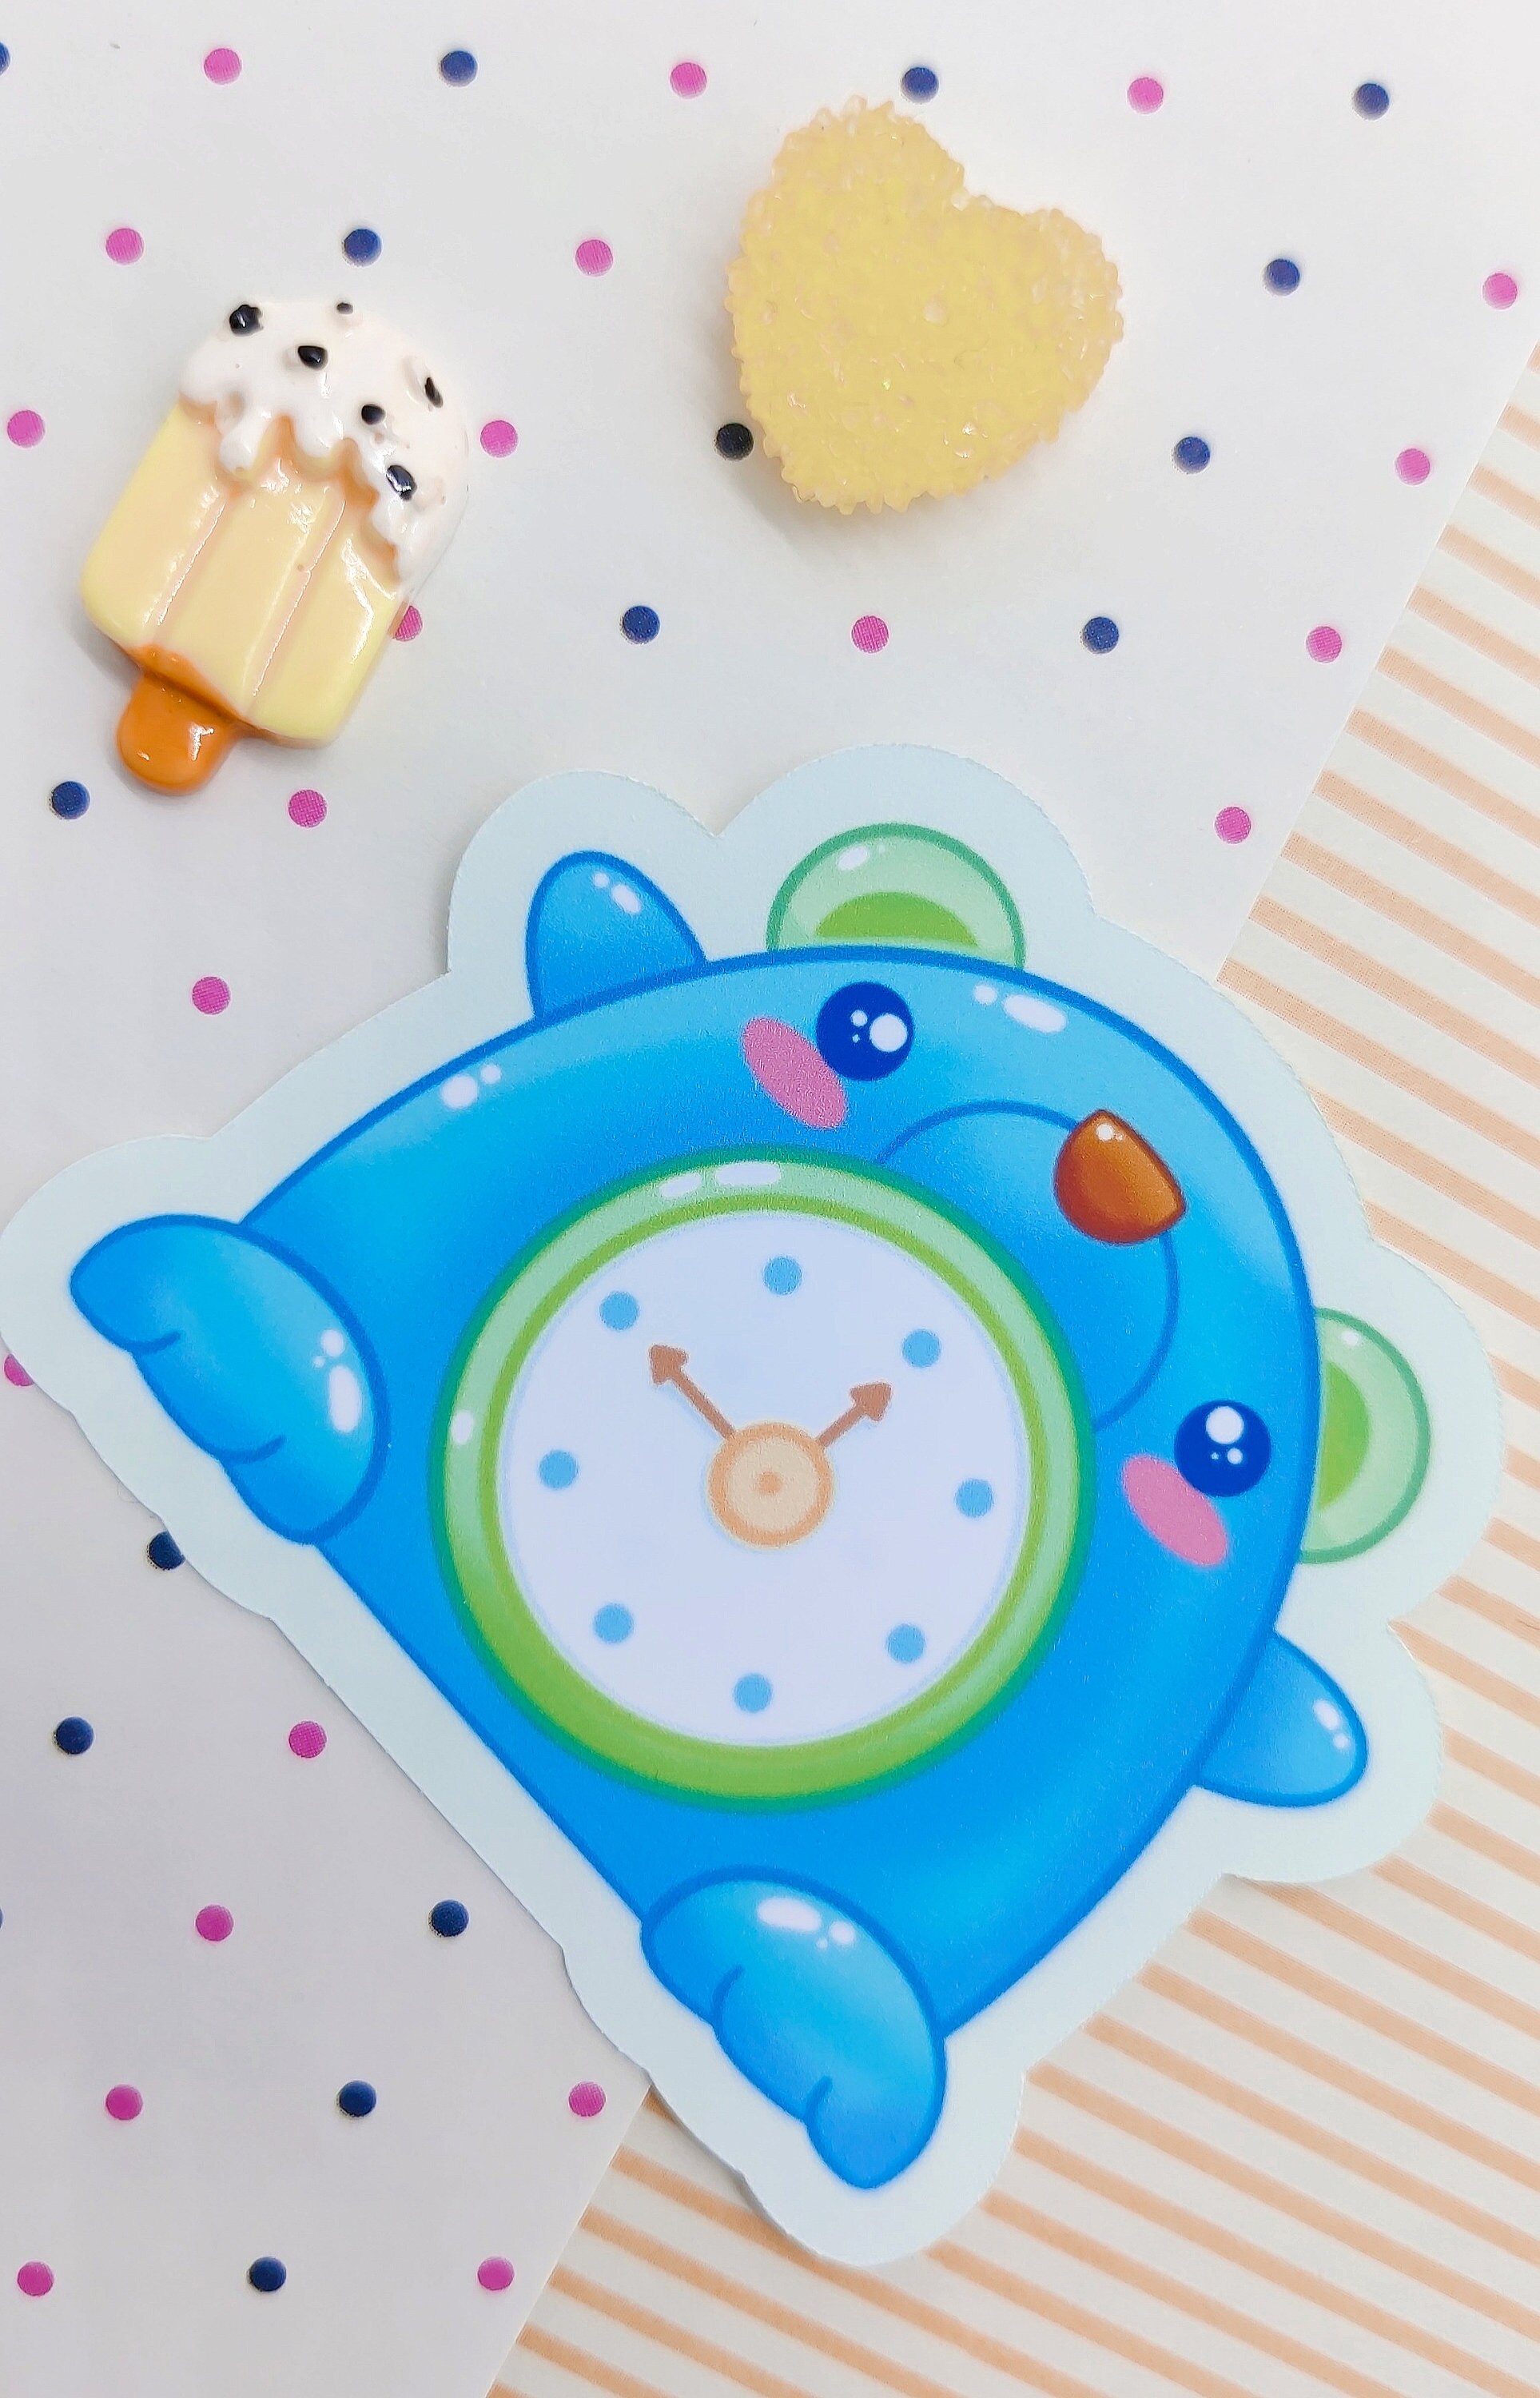 Kawaii Japan Collectibles - Stitch Alarm Clock P150